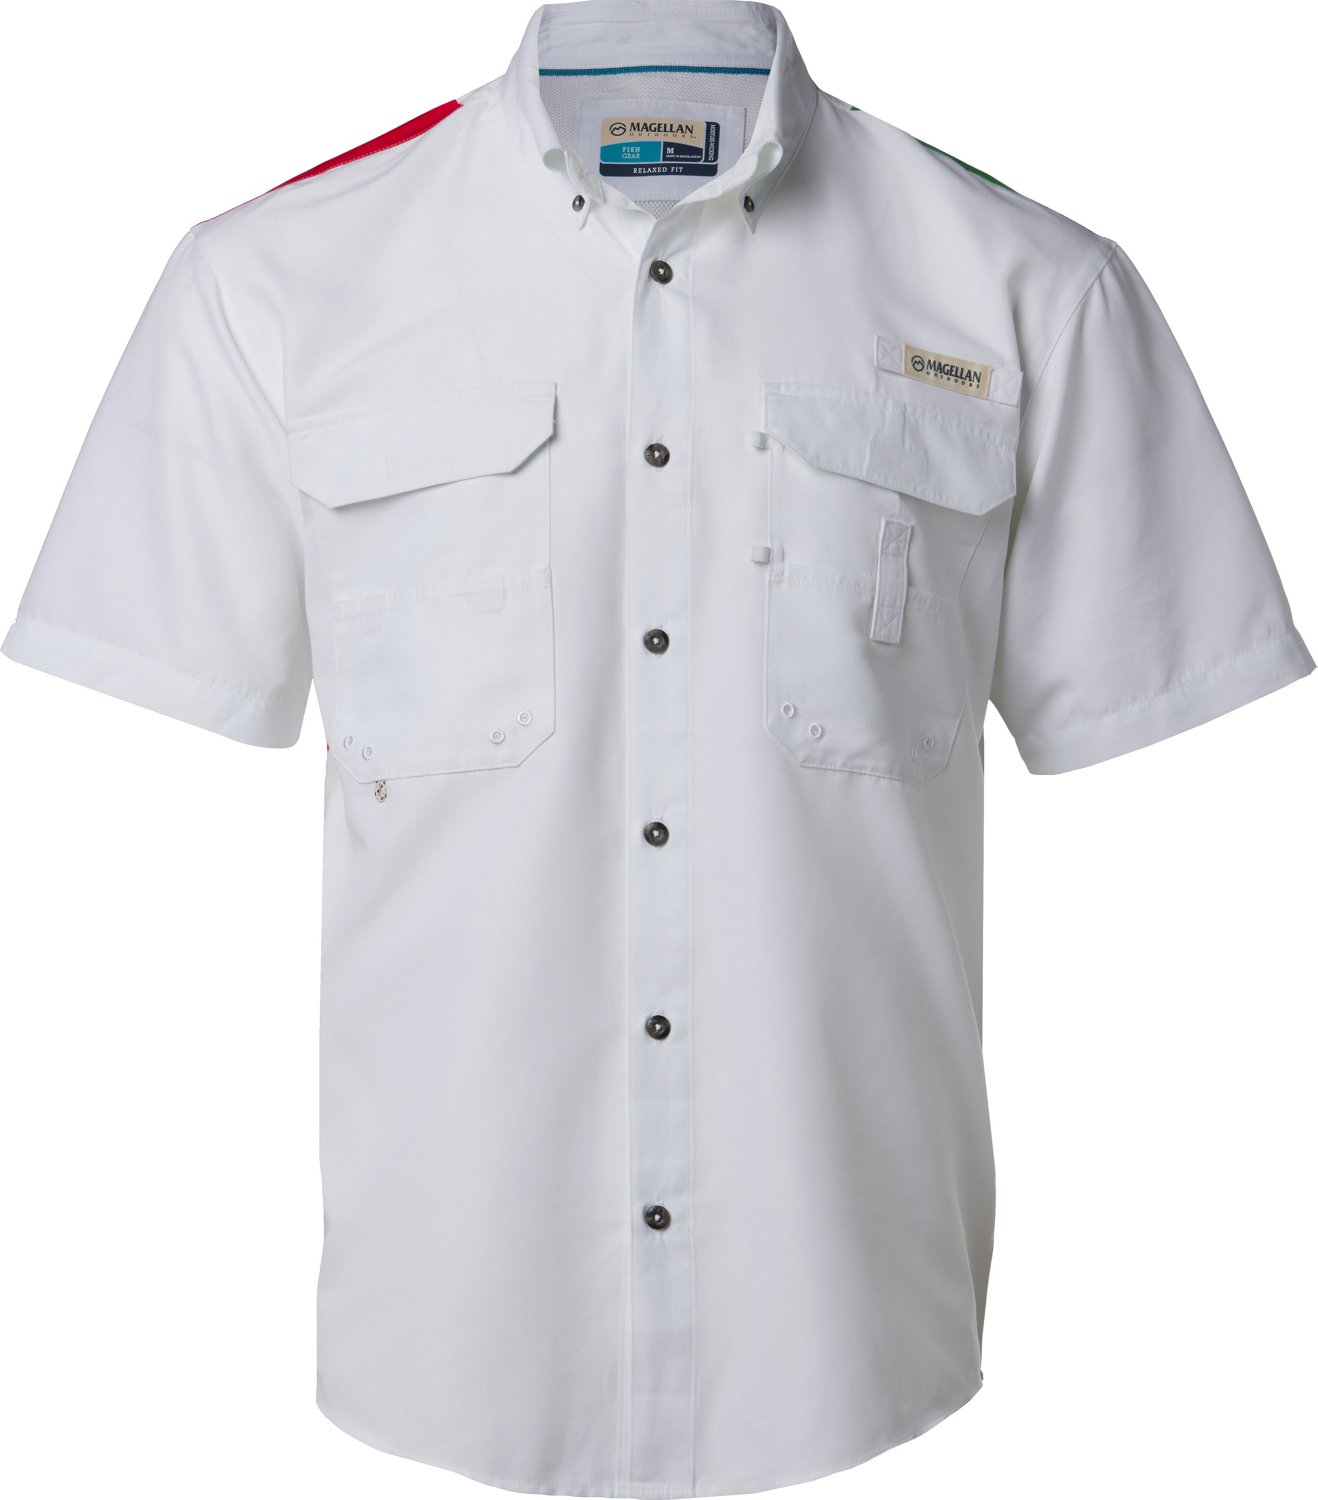 Magellan Outdoors Shirts | Magellan Lake Fork Fishing Shirt Men's XL White Flag Short Sleeve Outdoors | Color: Red/White | Size: XL | Mamabearsstuff's